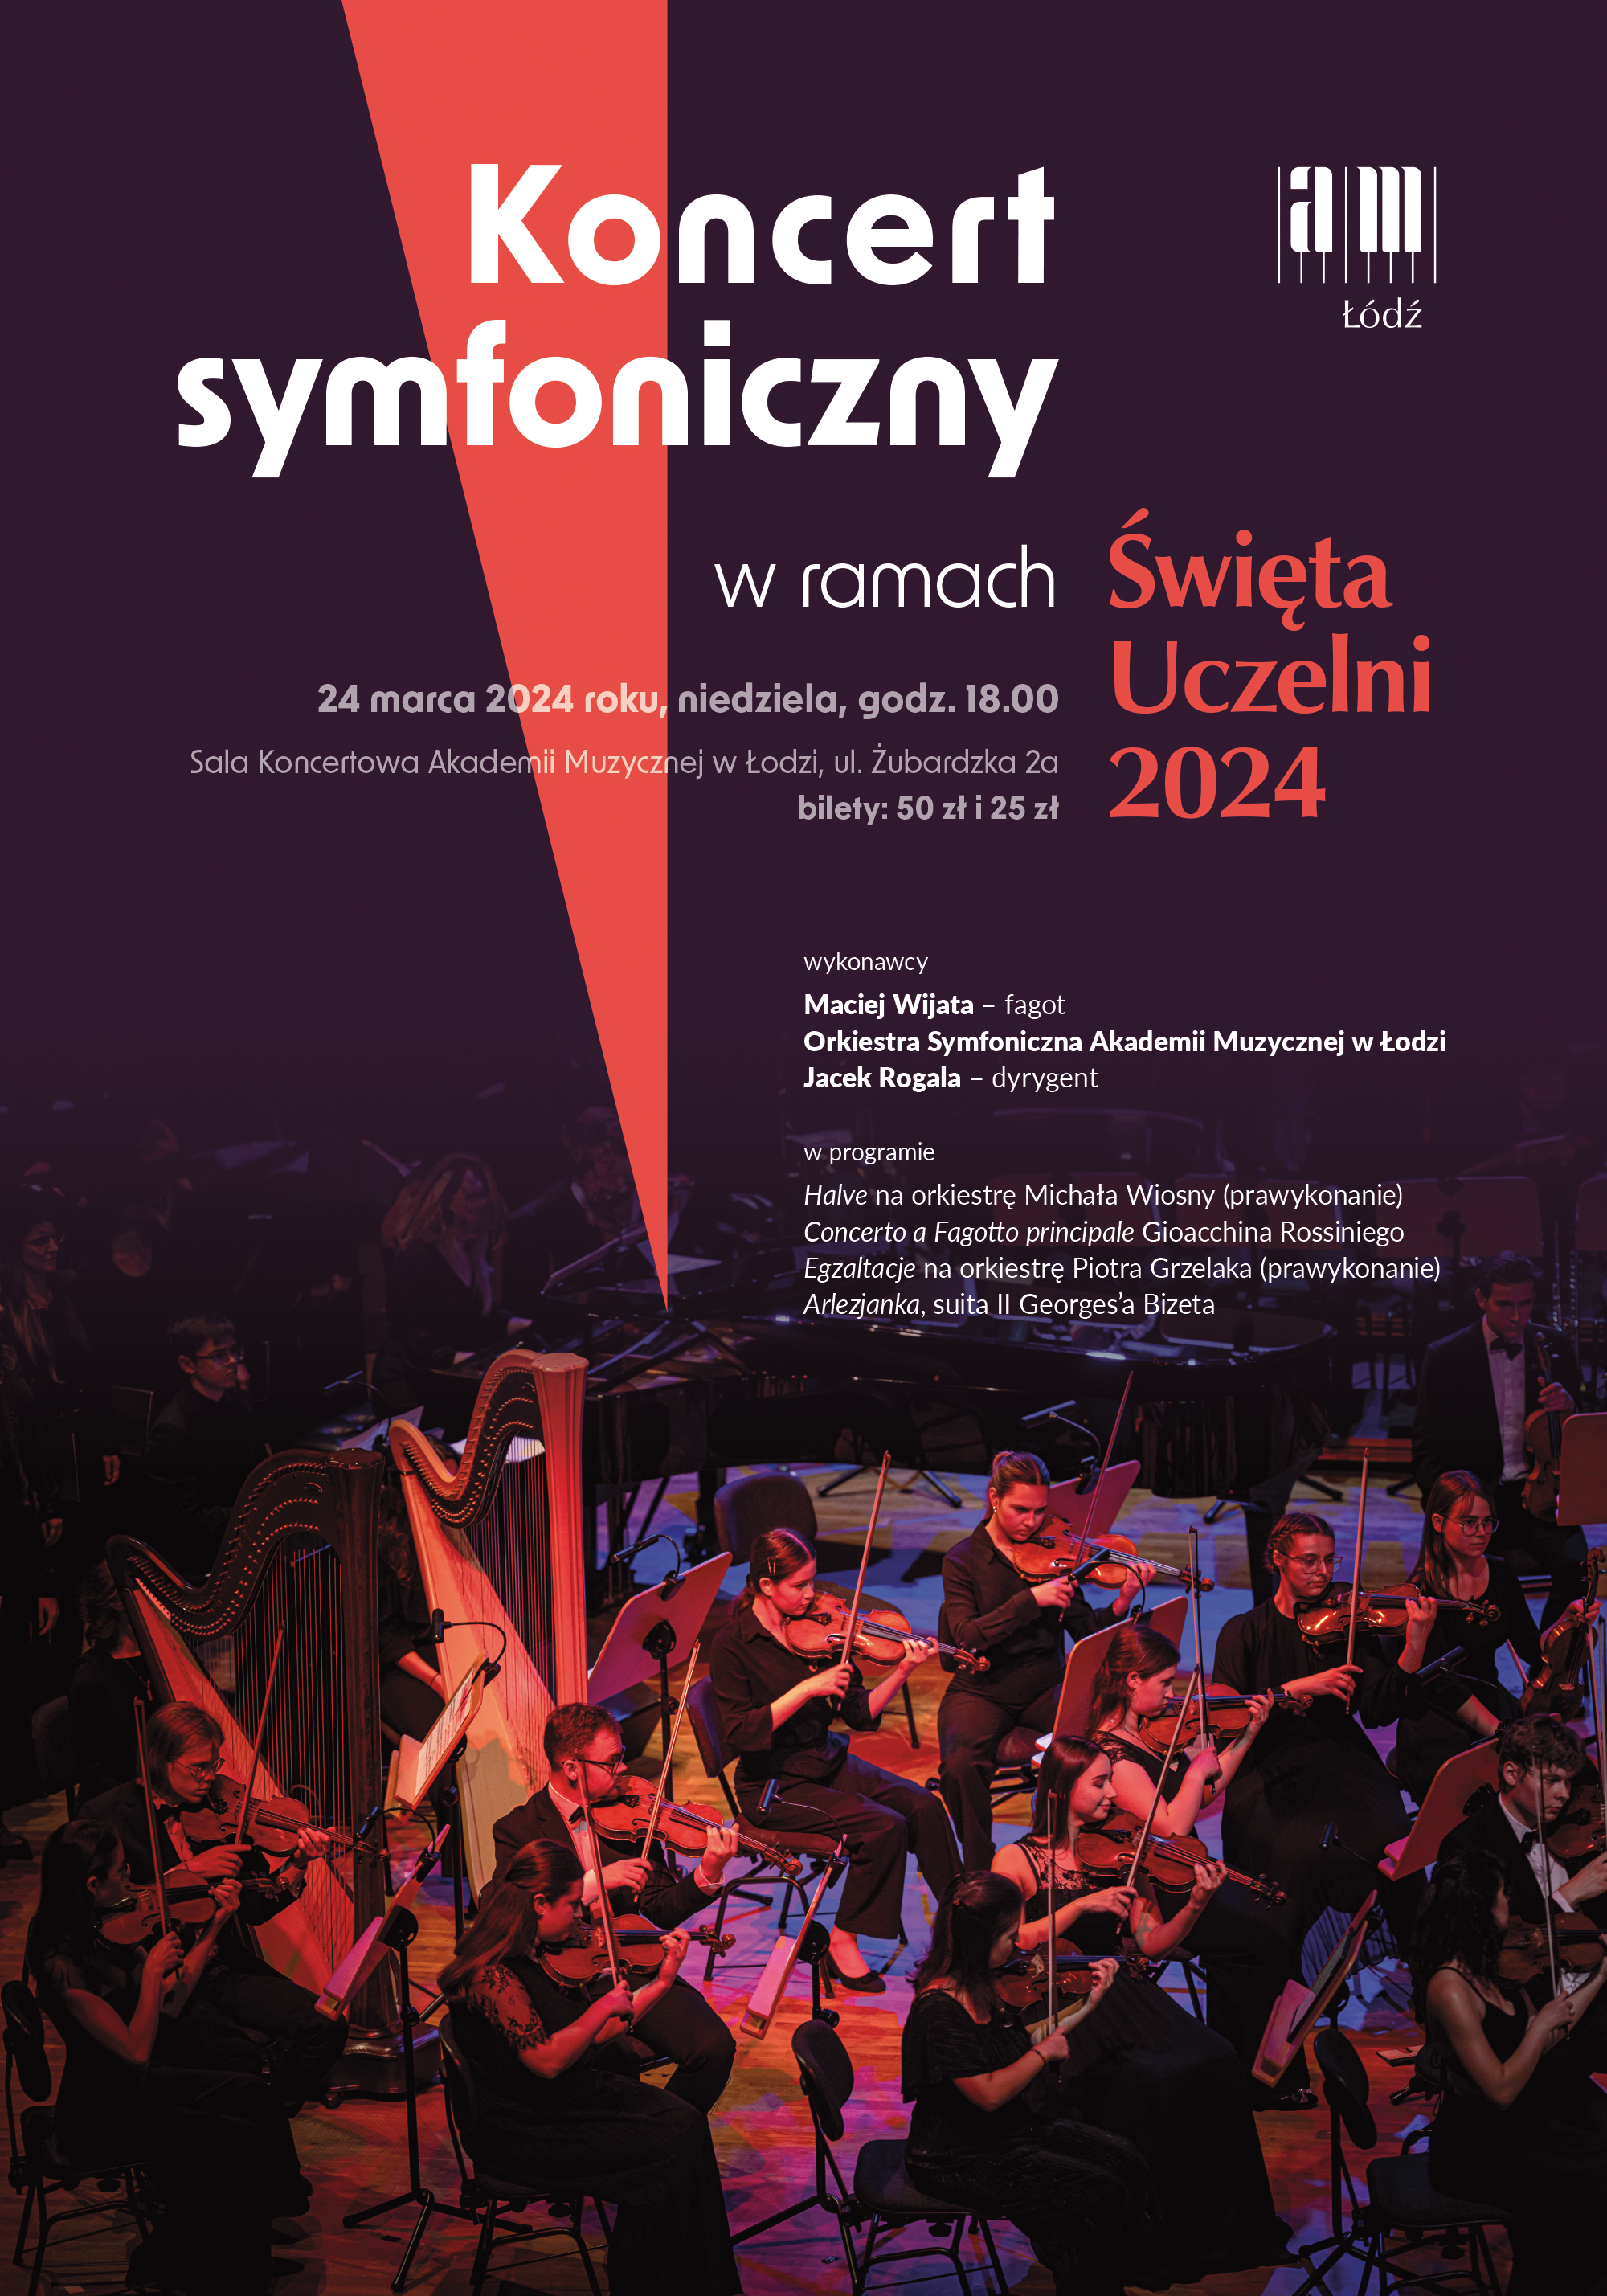 Koncert symfoniczny w ramach Święta Uczelni 2024 (plakat)